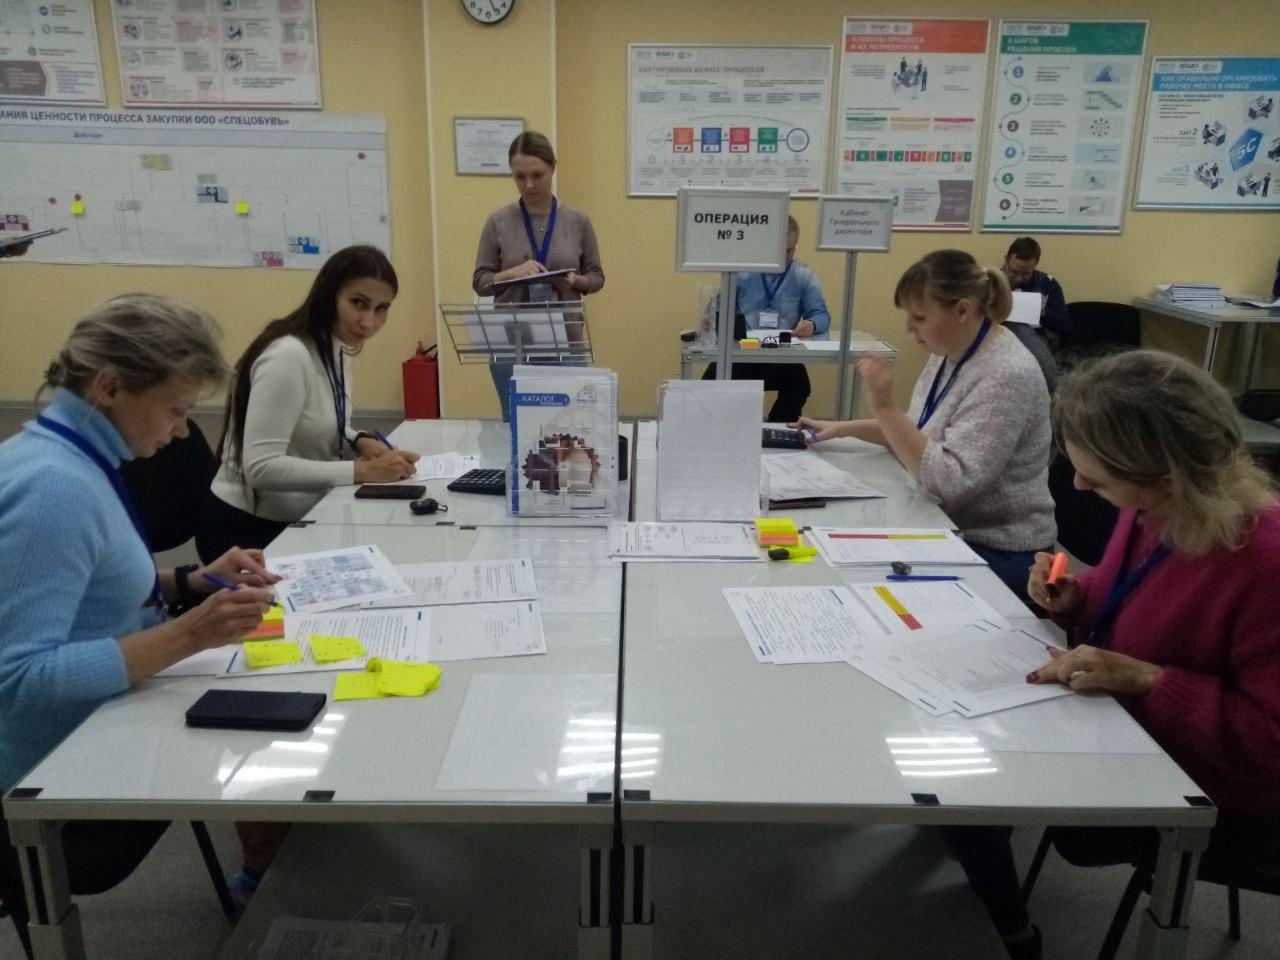 Орловские предприятия-участники нацпроекта используют инструменты бережливого производства в офисах